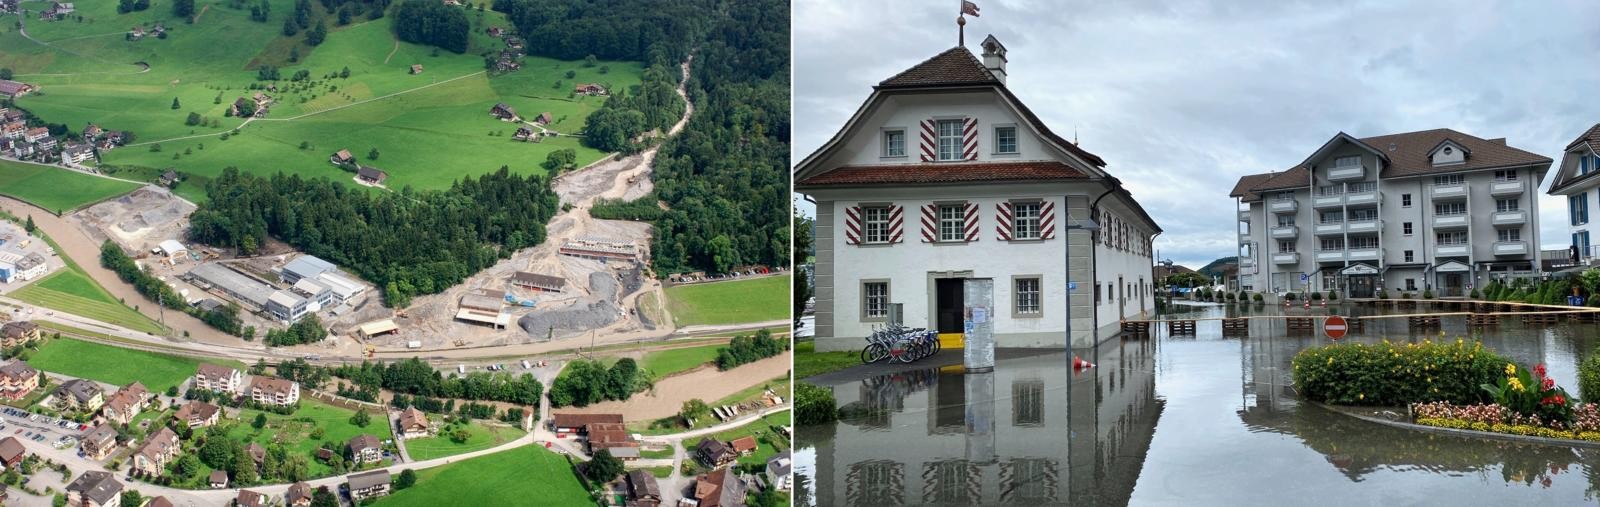 Hochwasser Buoholzbach 2005 und Hochwasser Stansstad 2021